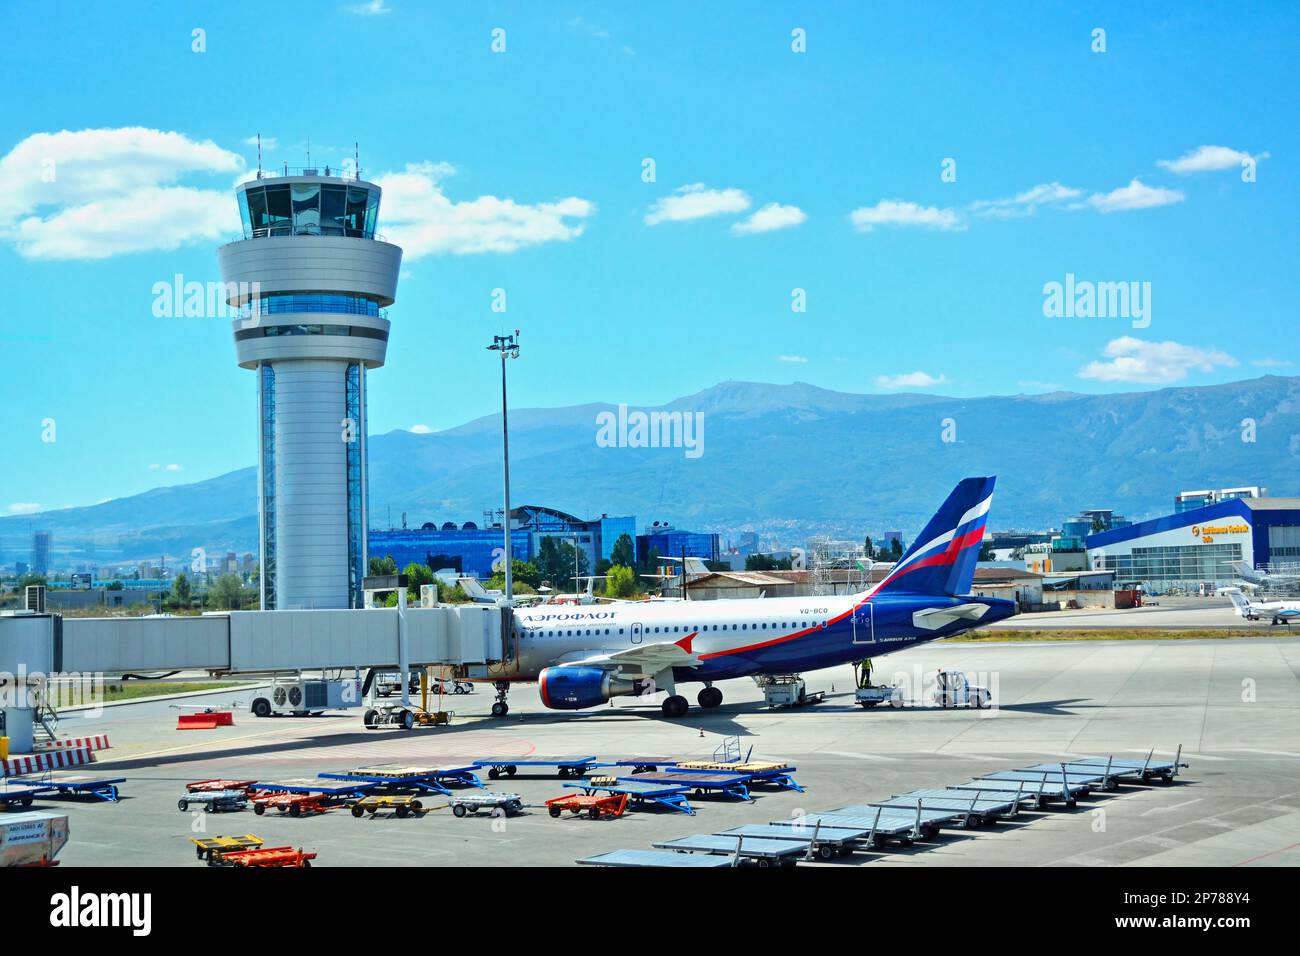 AirBridge et la tour de répartition de l'aéroport international de Sofia, photo prise sur 04 septembre 2013, l'aéroport de Sofia est l'aéroport international principal de Bulgarie Banque D'Images